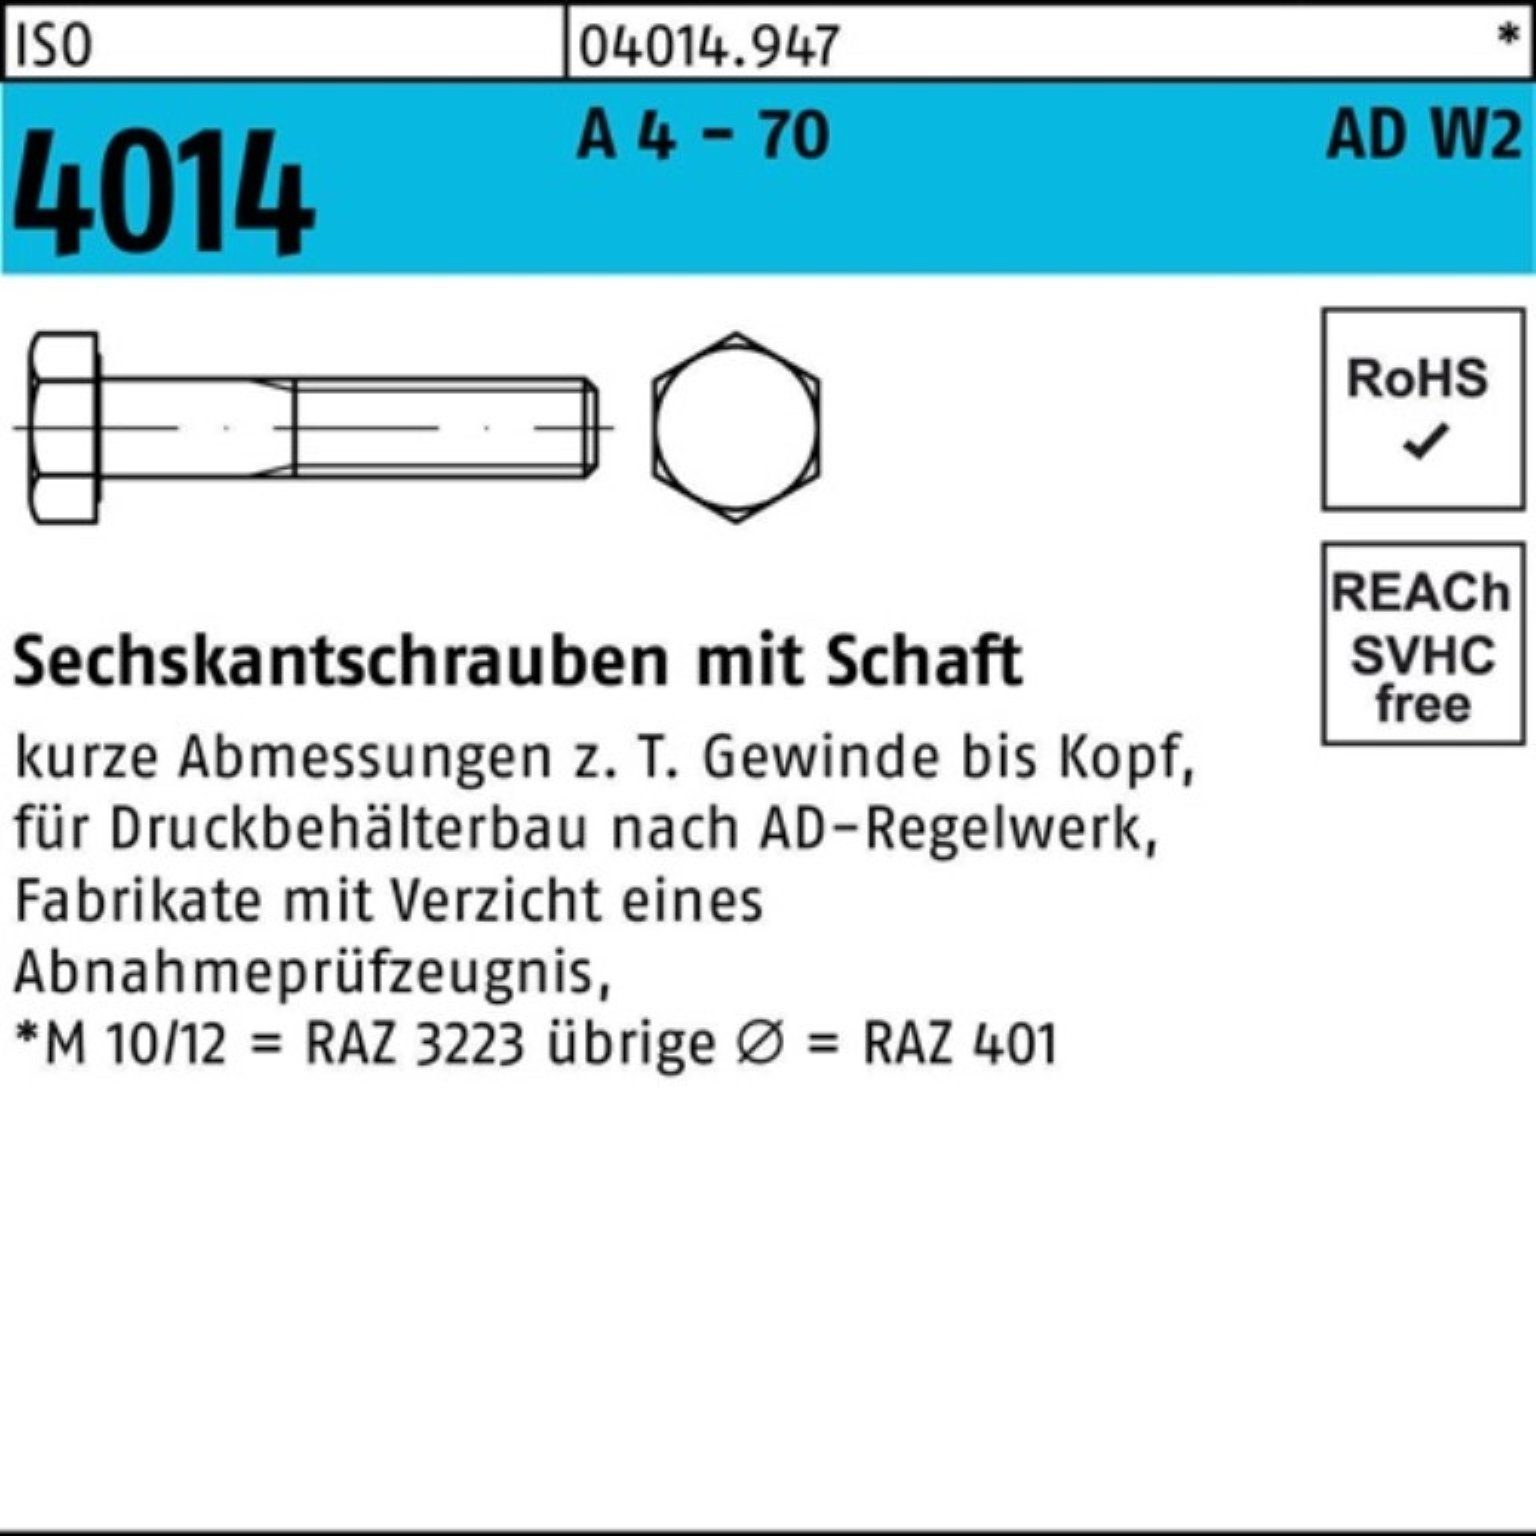 Bufab 4 Sechskantschraube 4014 ISO 70 Sechskantschraube 100er M12x 55 A AD-W2 Pack 50 Schaft -